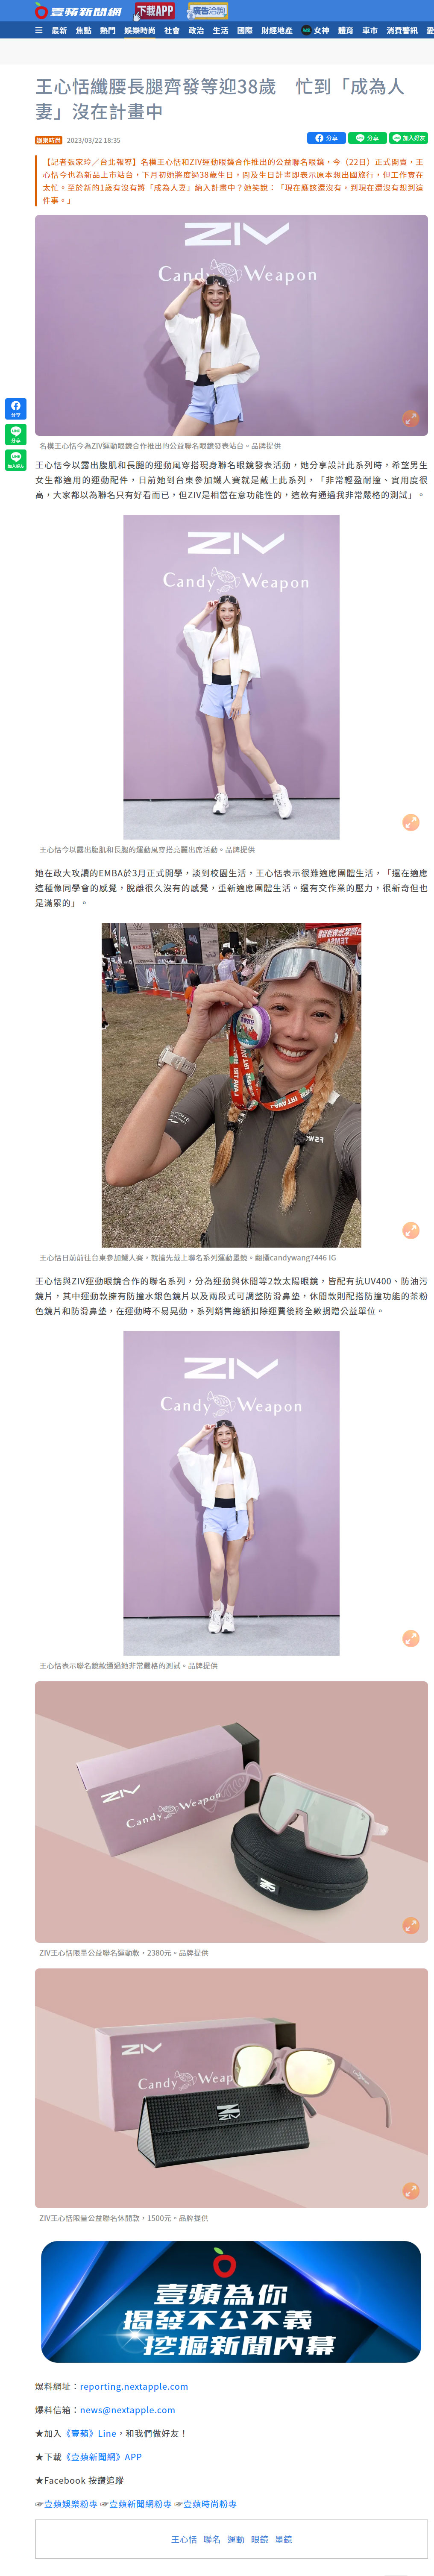 名模王心恬和ZIV運動眼鏡合作推出的公益聯名眼鏡